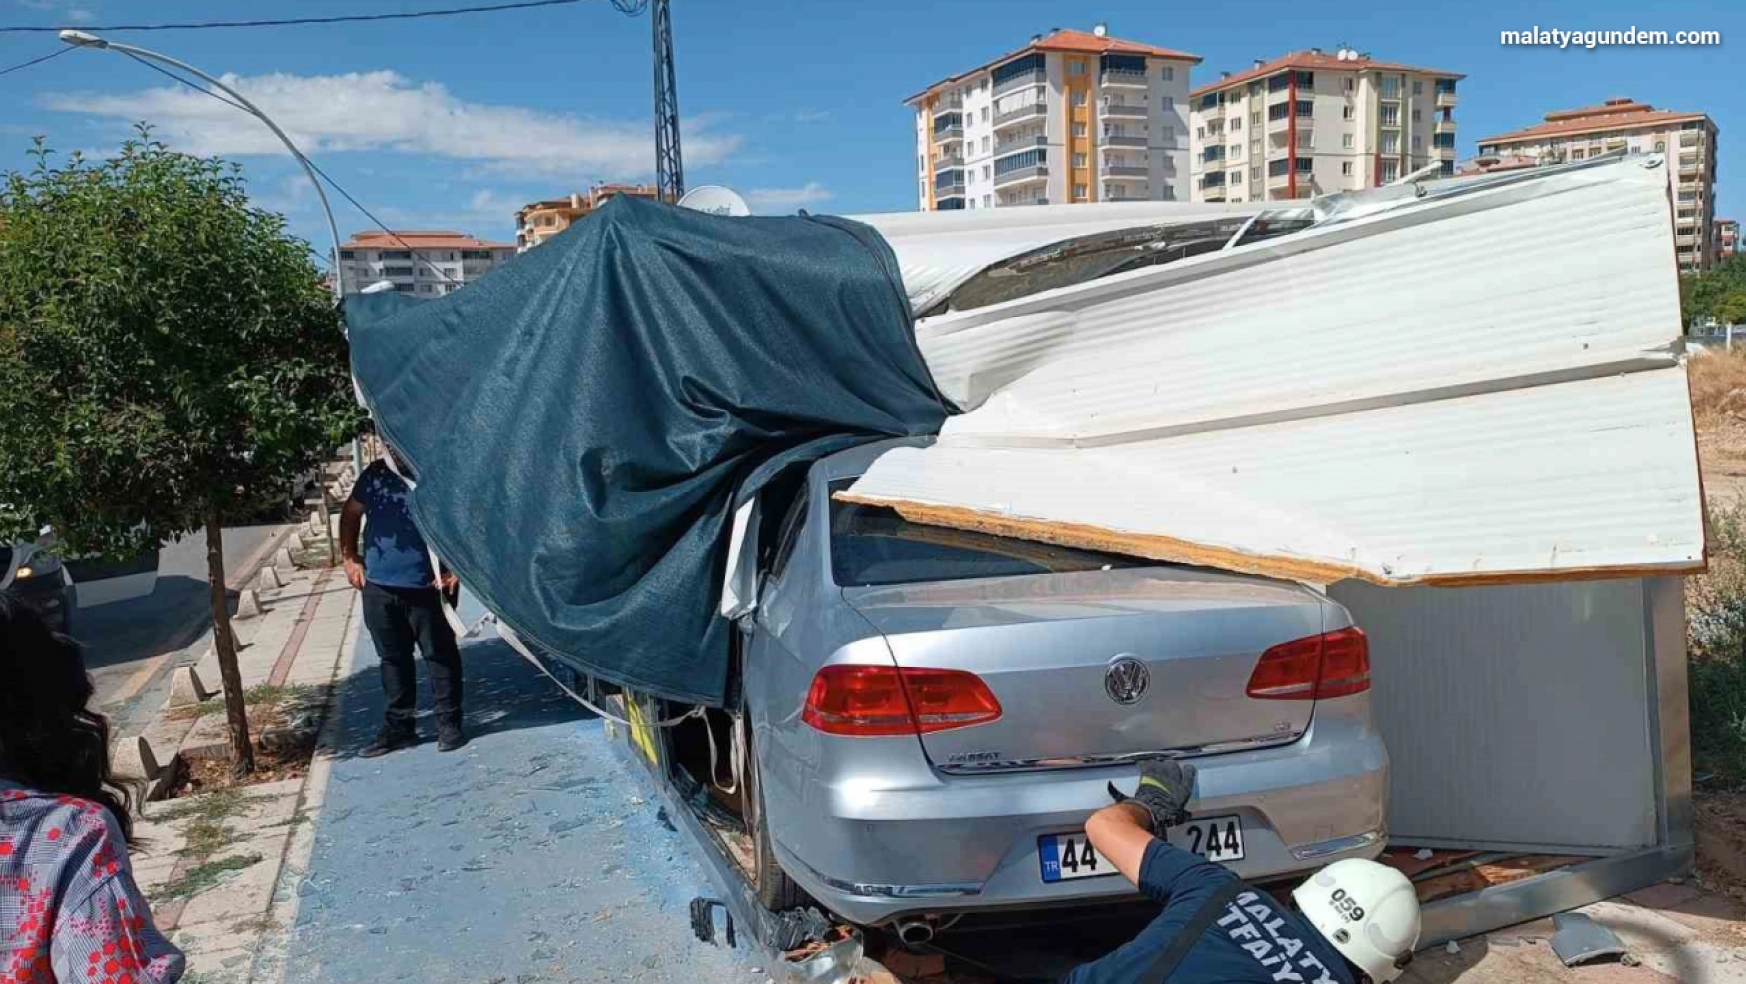 Malatya'da üç ayrı kazada 3 kişi yaralandı